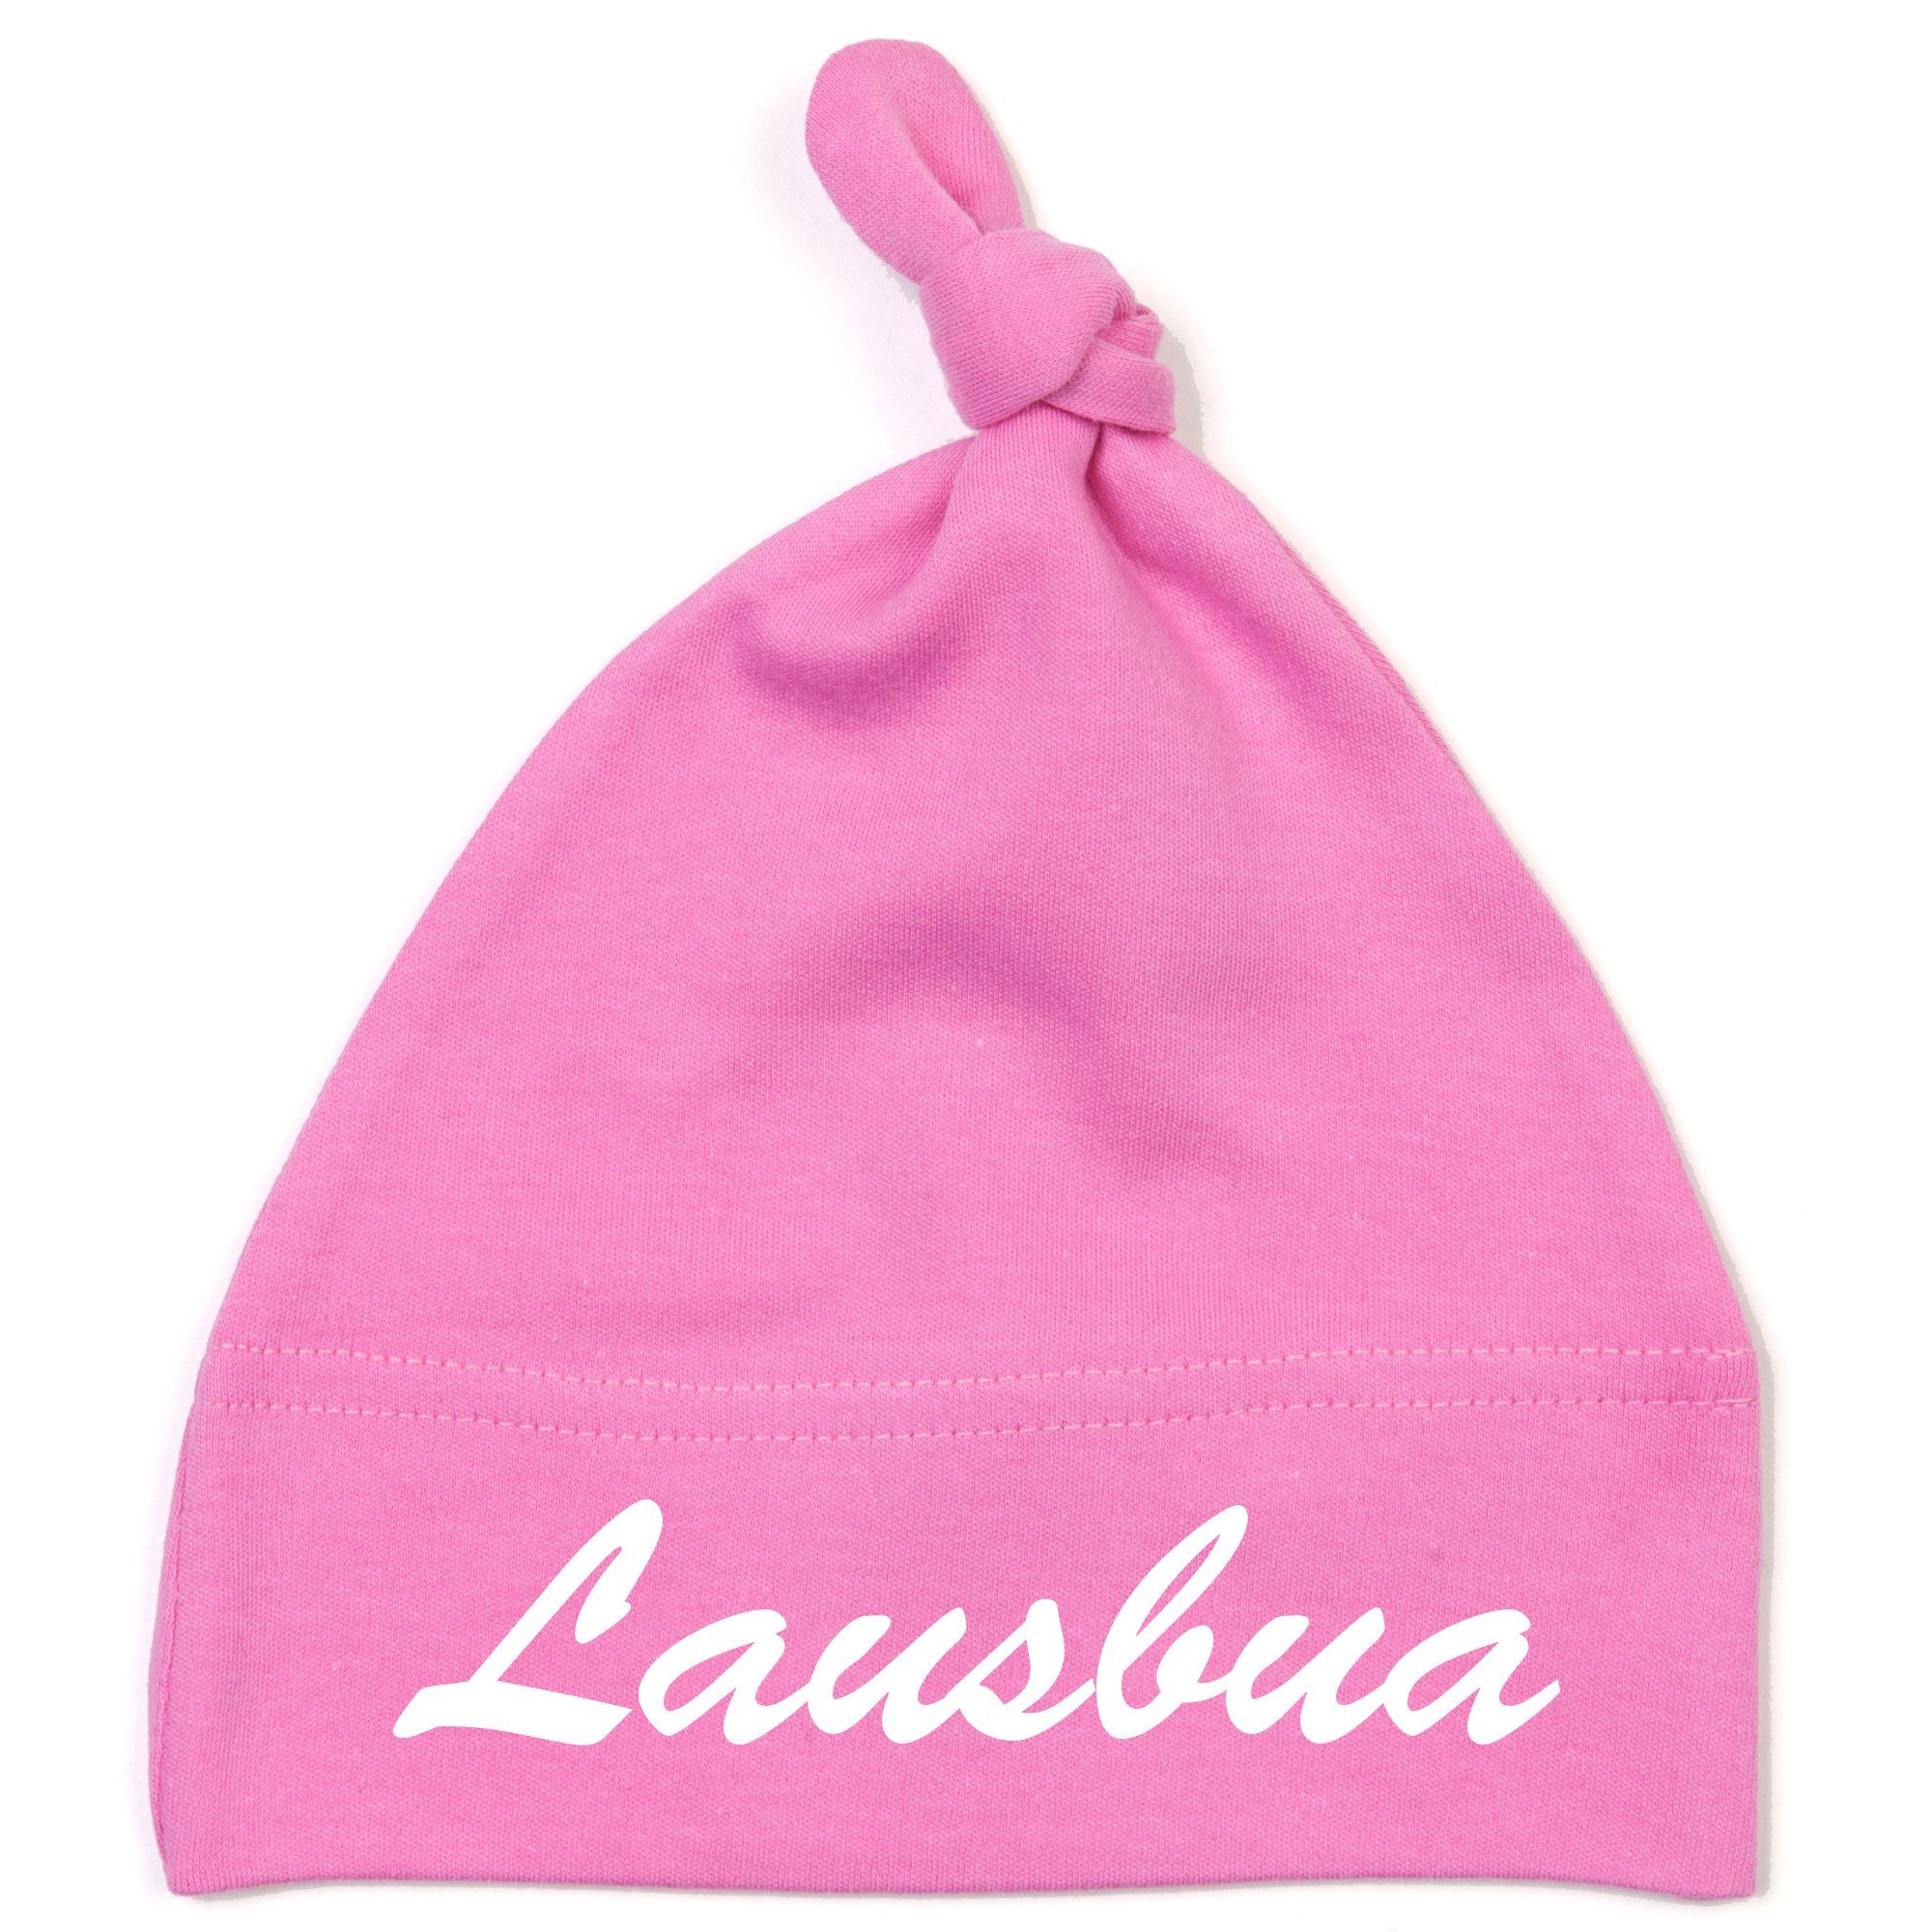 Schnoschi Erstlingsmütze Babymütze mit Knoten und mit Lausbua hochwertig bestickt / gestickt Stickerei mit Lausbua pink